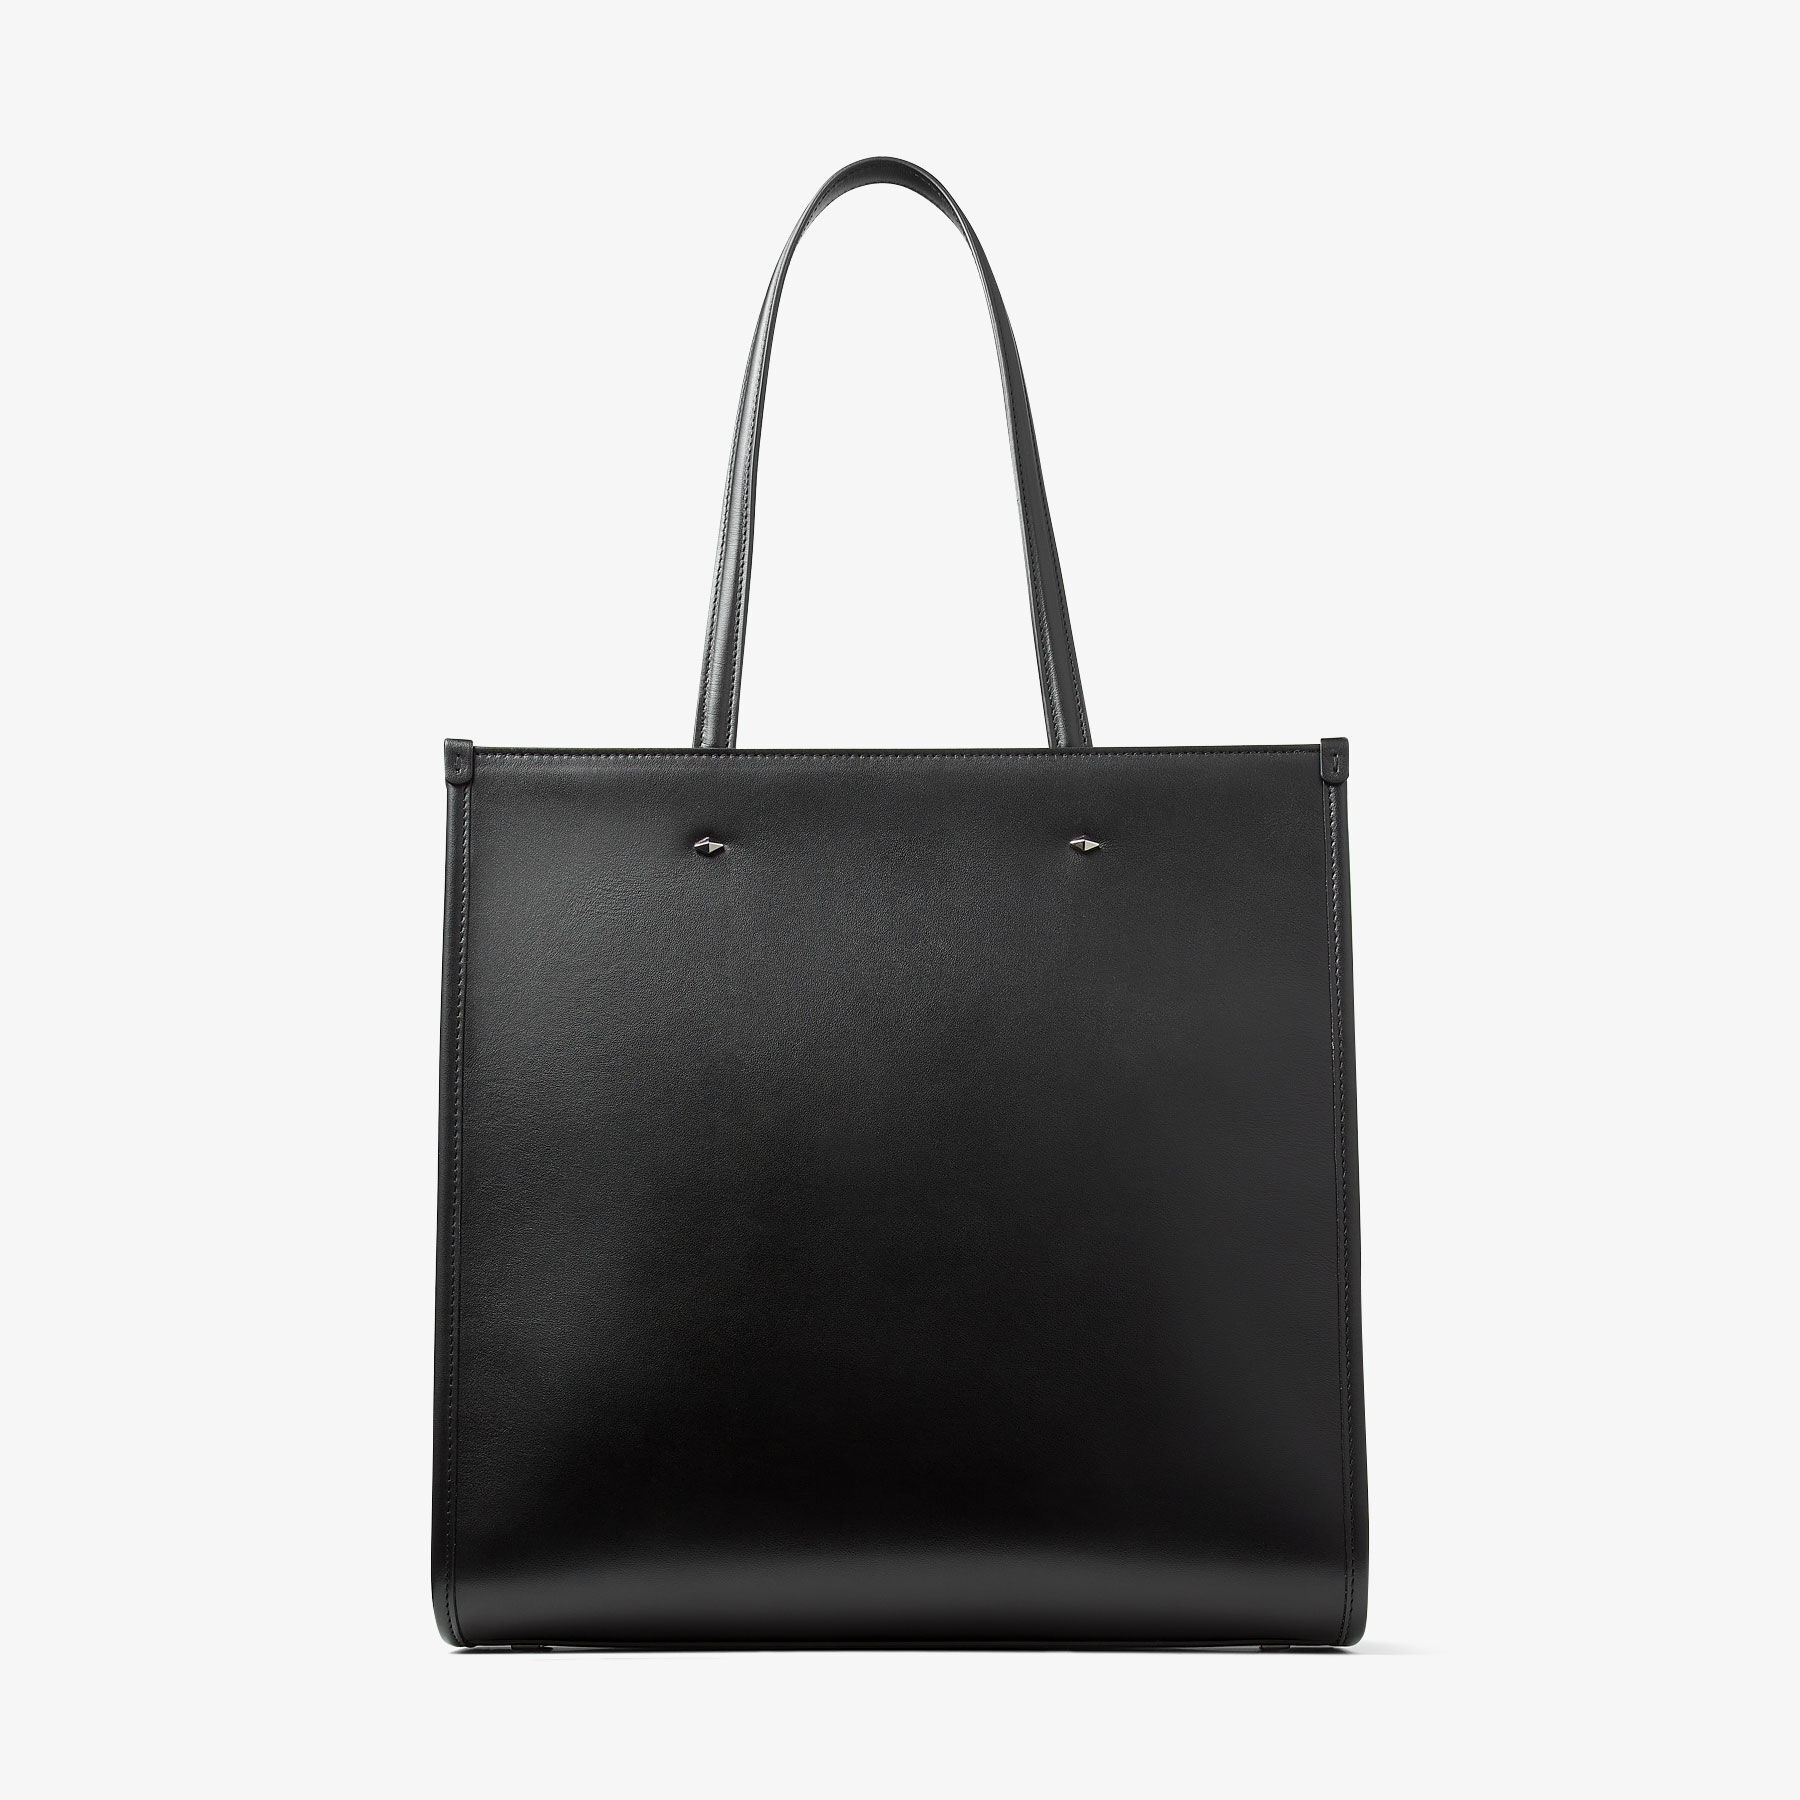 N/S Tote M
Black Leather Mini Tote Bag - 6